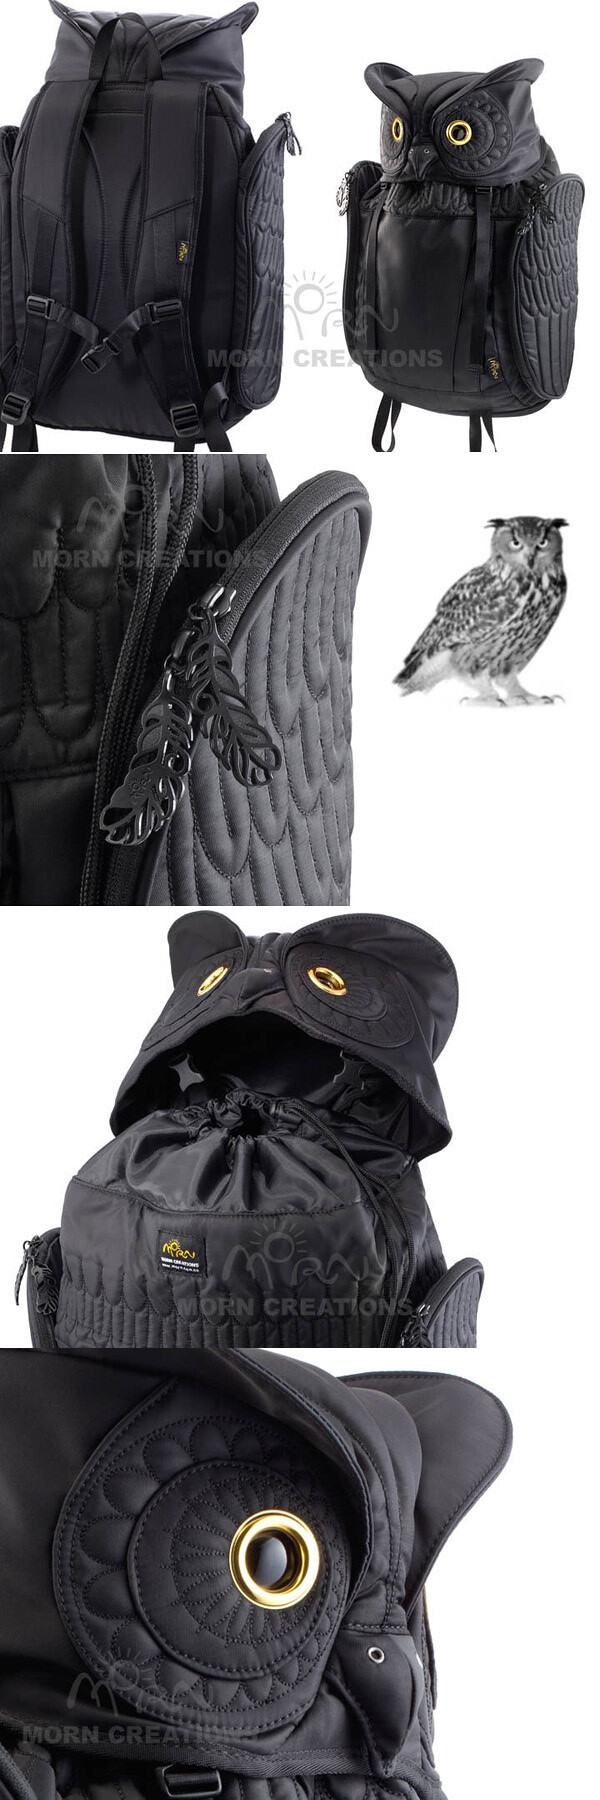 【产品设计/创意】The Owls猫头鹰造型背包，来自香港原创设计品牌@MornCreations（日出意念有限公司），他们之前曾推出著名的鲨鱼背包